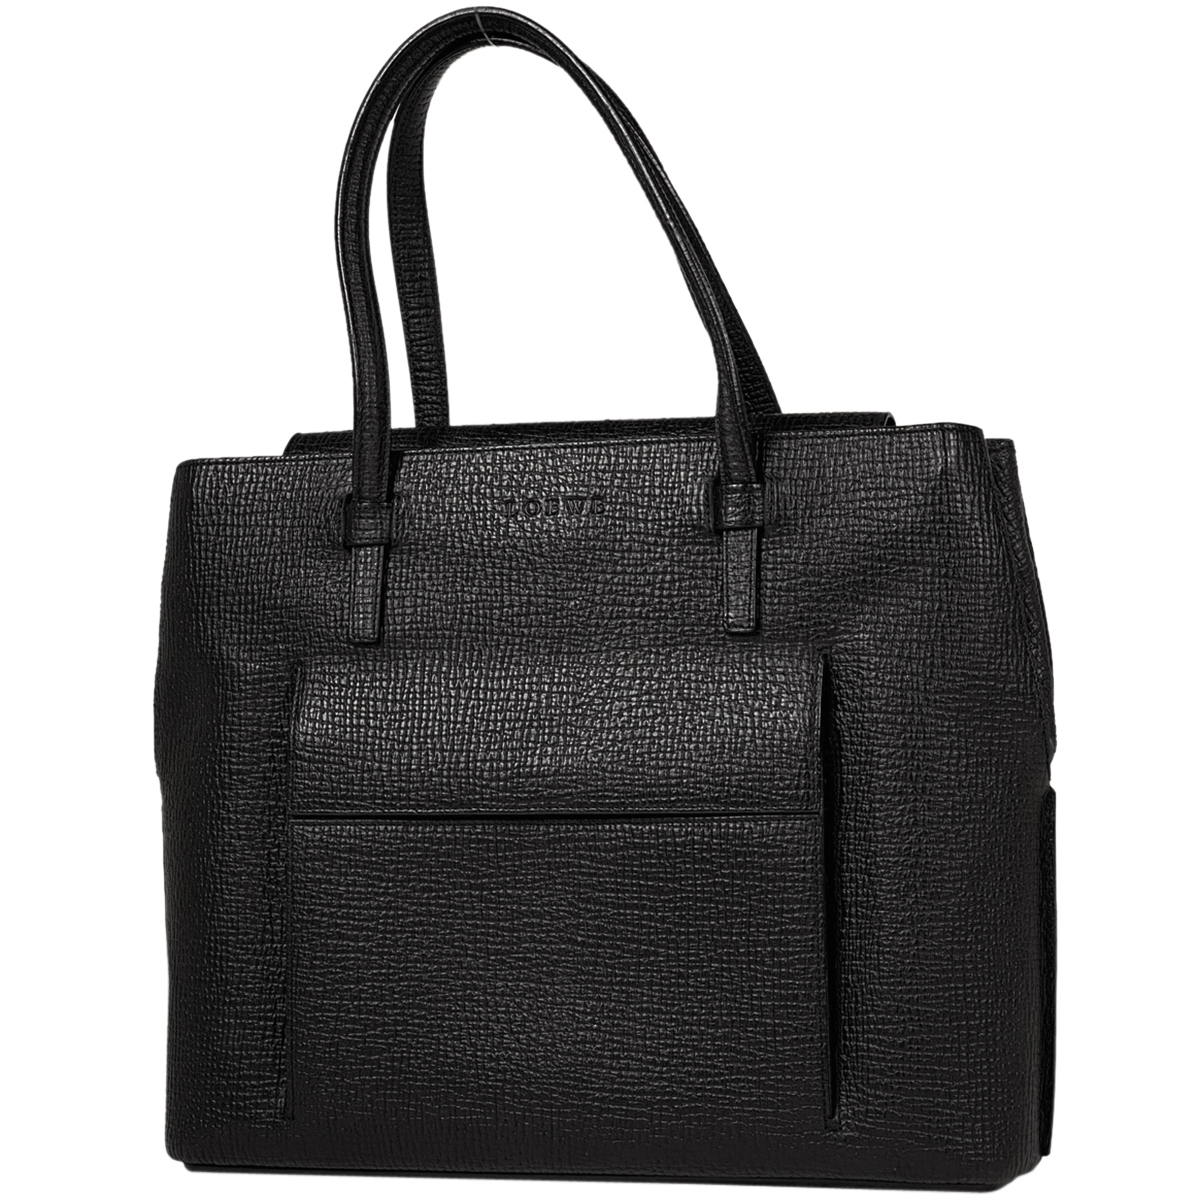  Loewe LOEWE Logo большая сумка ручная сумочка большая сумка кожа черный женский [ б/у ]